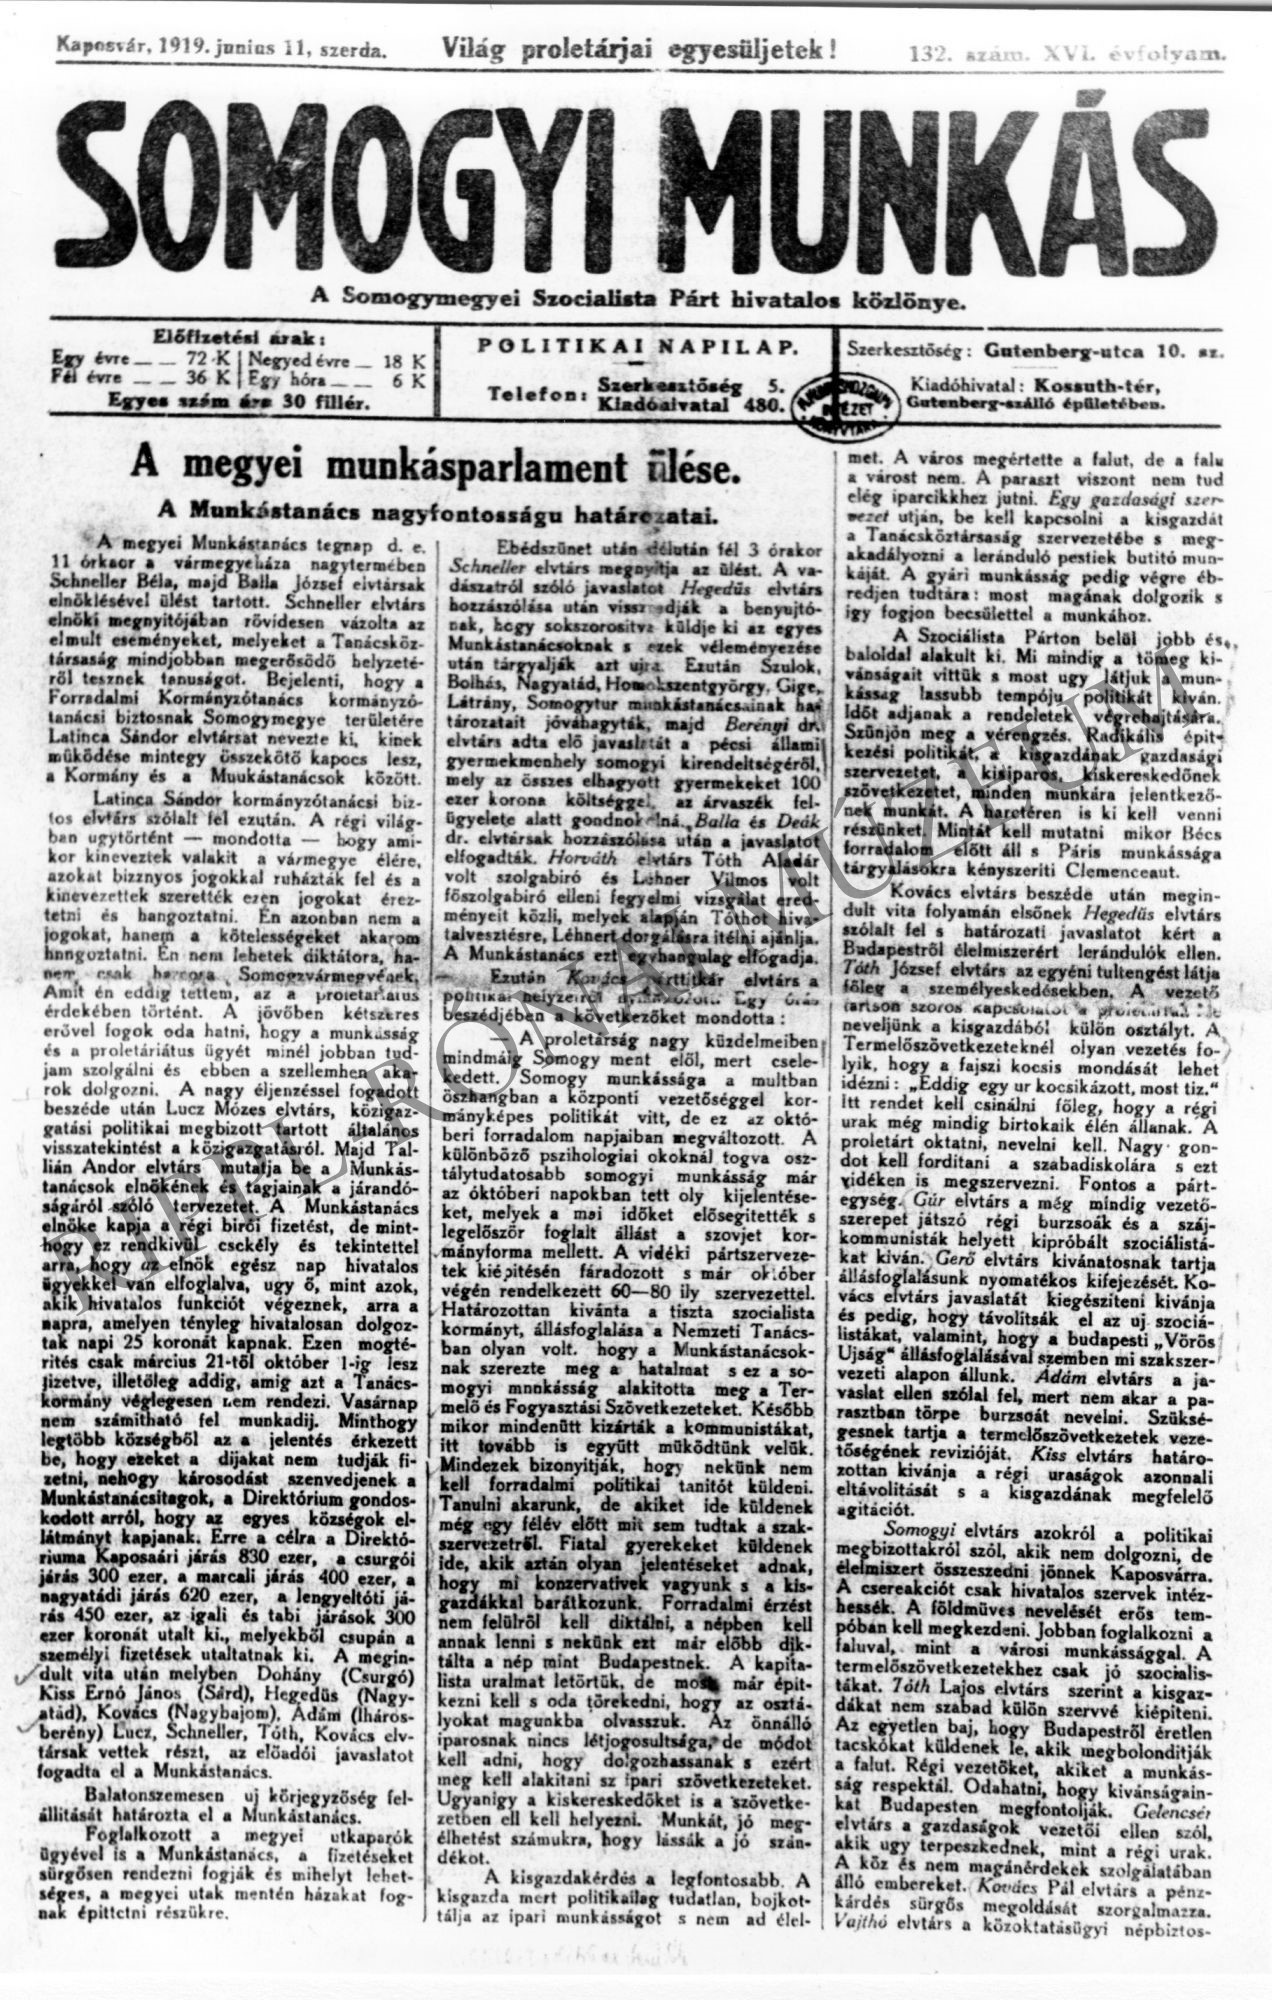 Somogyi Munkás. 1919. junius 11. címlap "A megyei munkásparlament ülése" (Rippl-Rónai Múzeum CC BY-NC-SA)